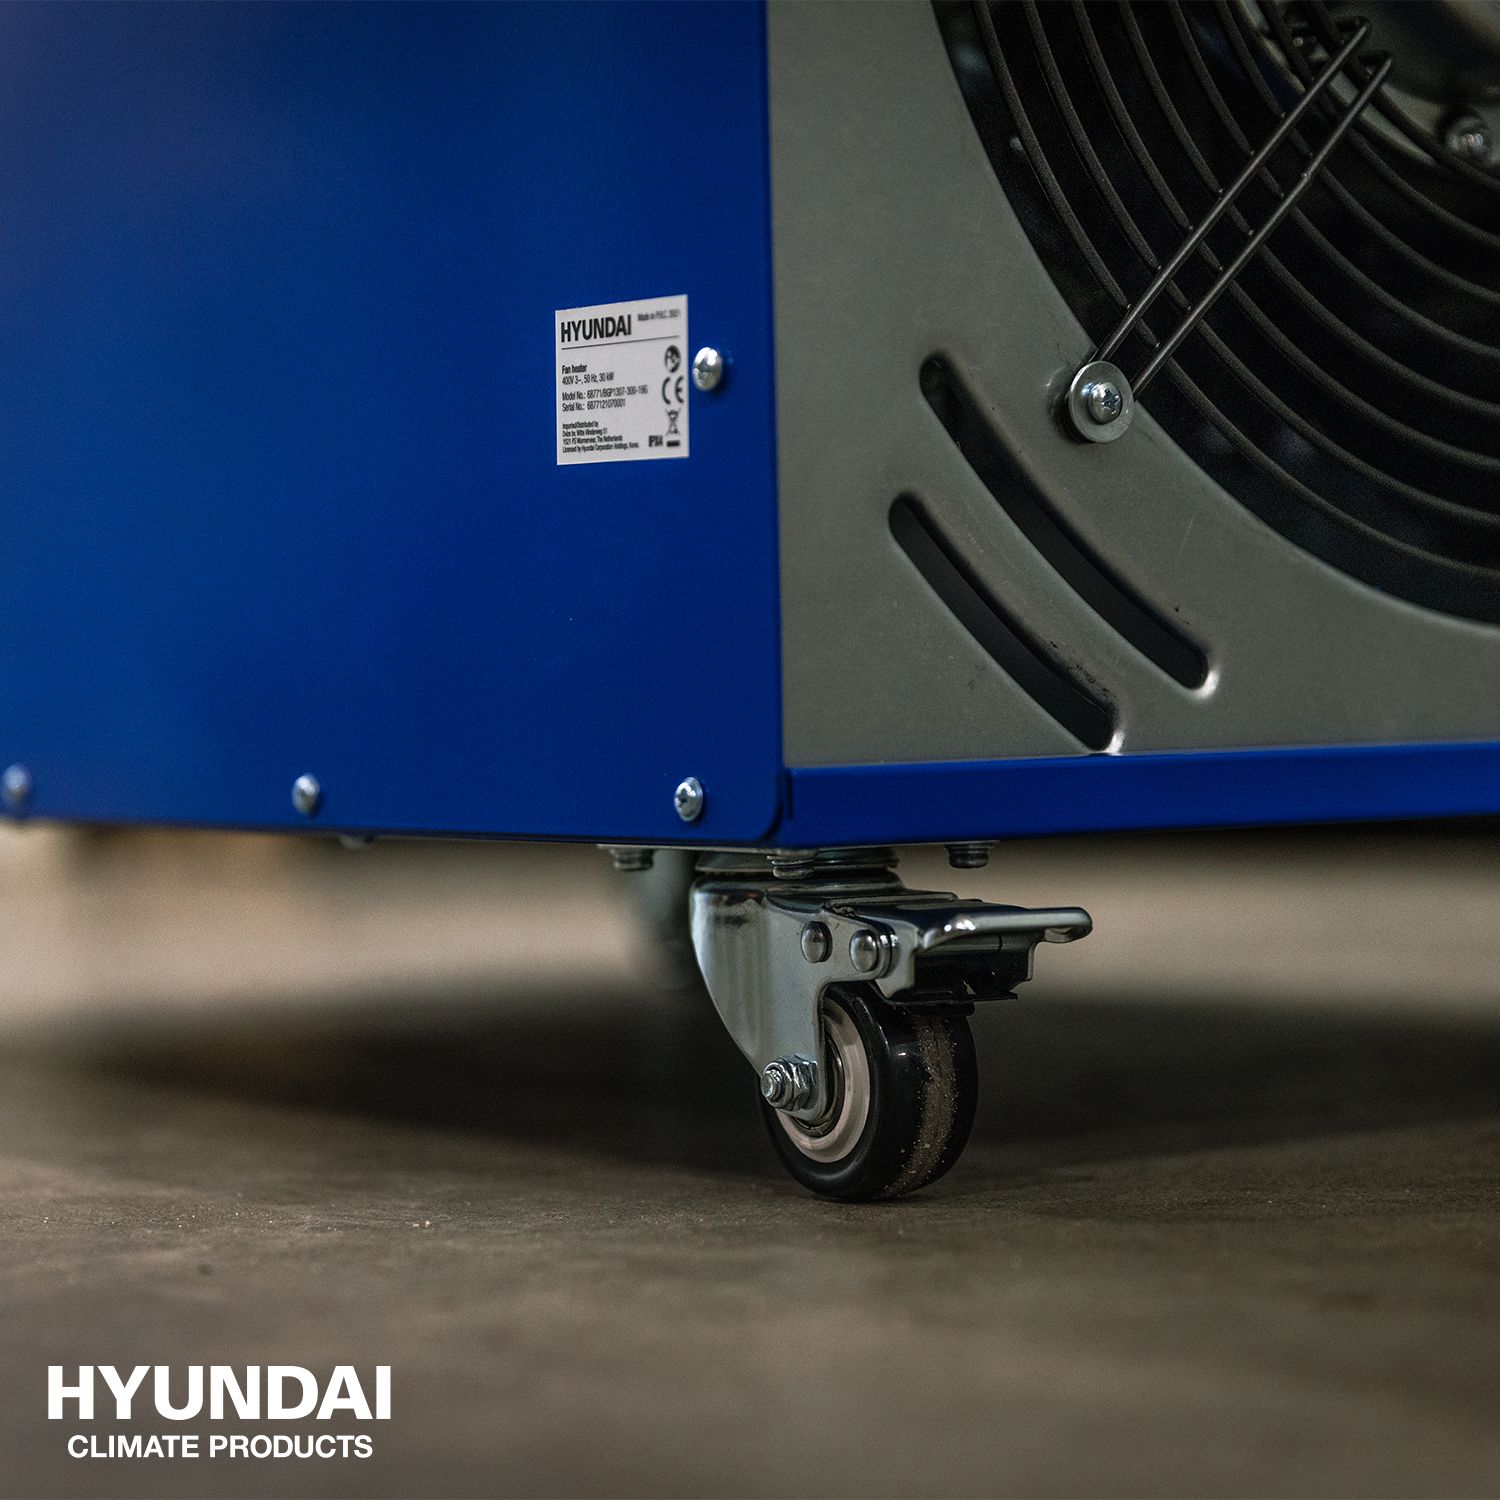 Hyundai elektrische heater 30KW 400